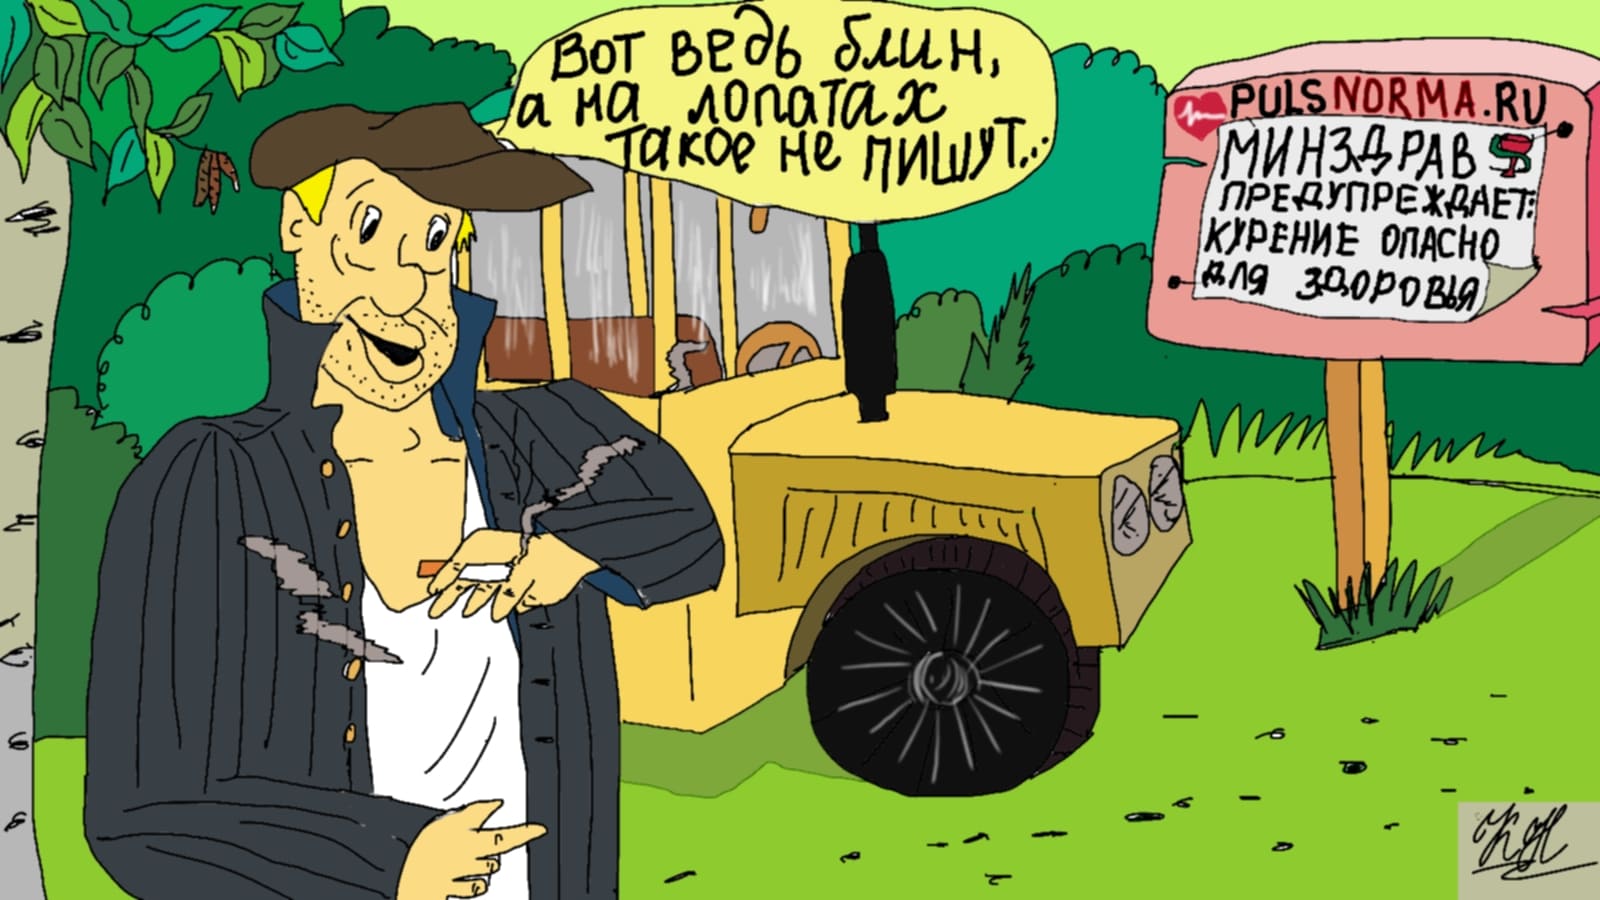 микроинфаркт - карикатура на пульснорма.ру